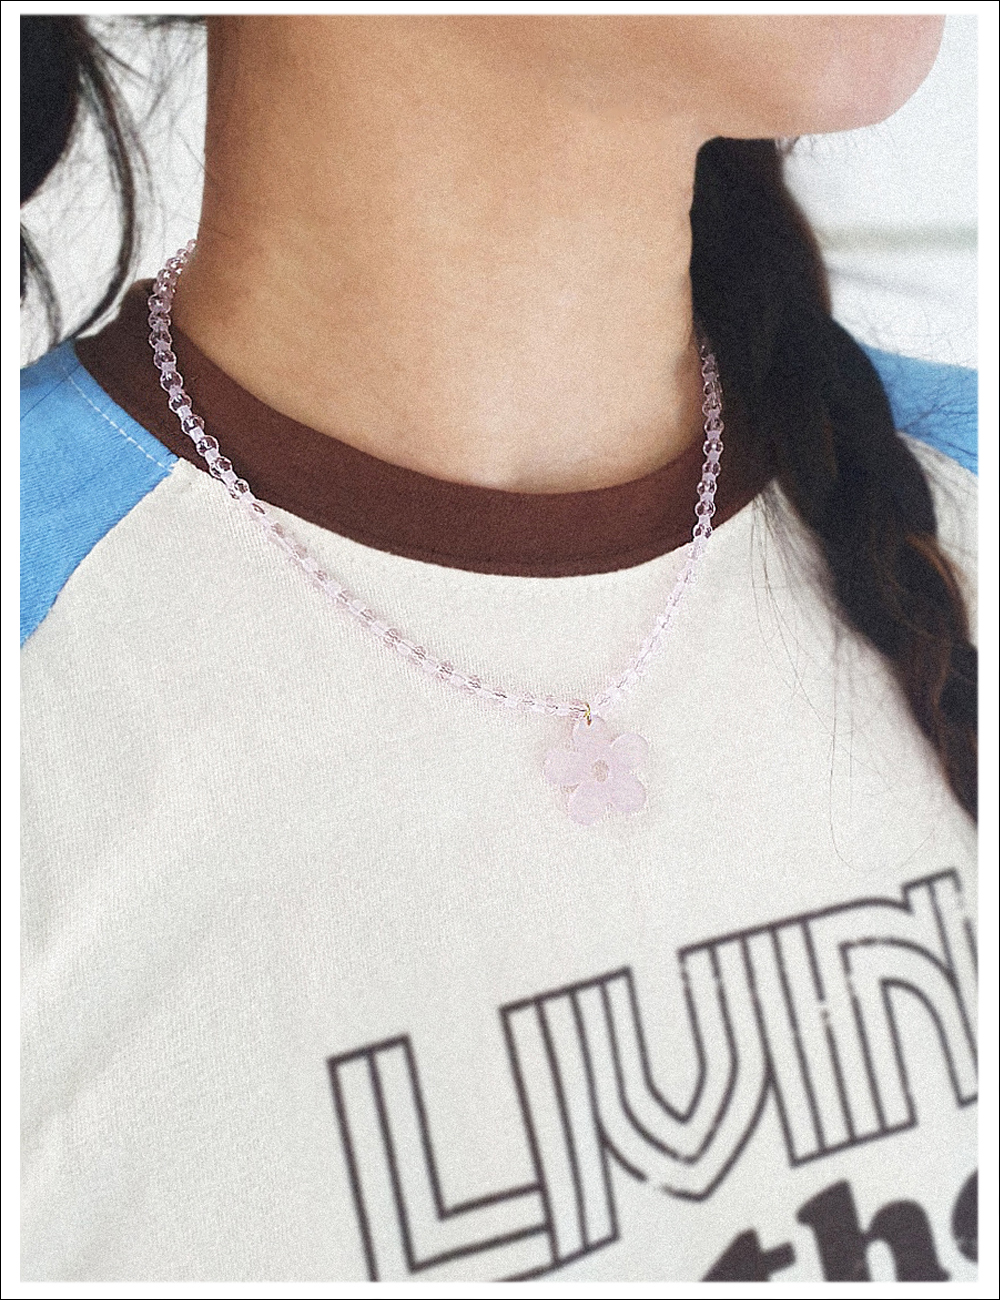 Lovely pink crystal Necklace 러블리 핑크 크리스탈 목걸이